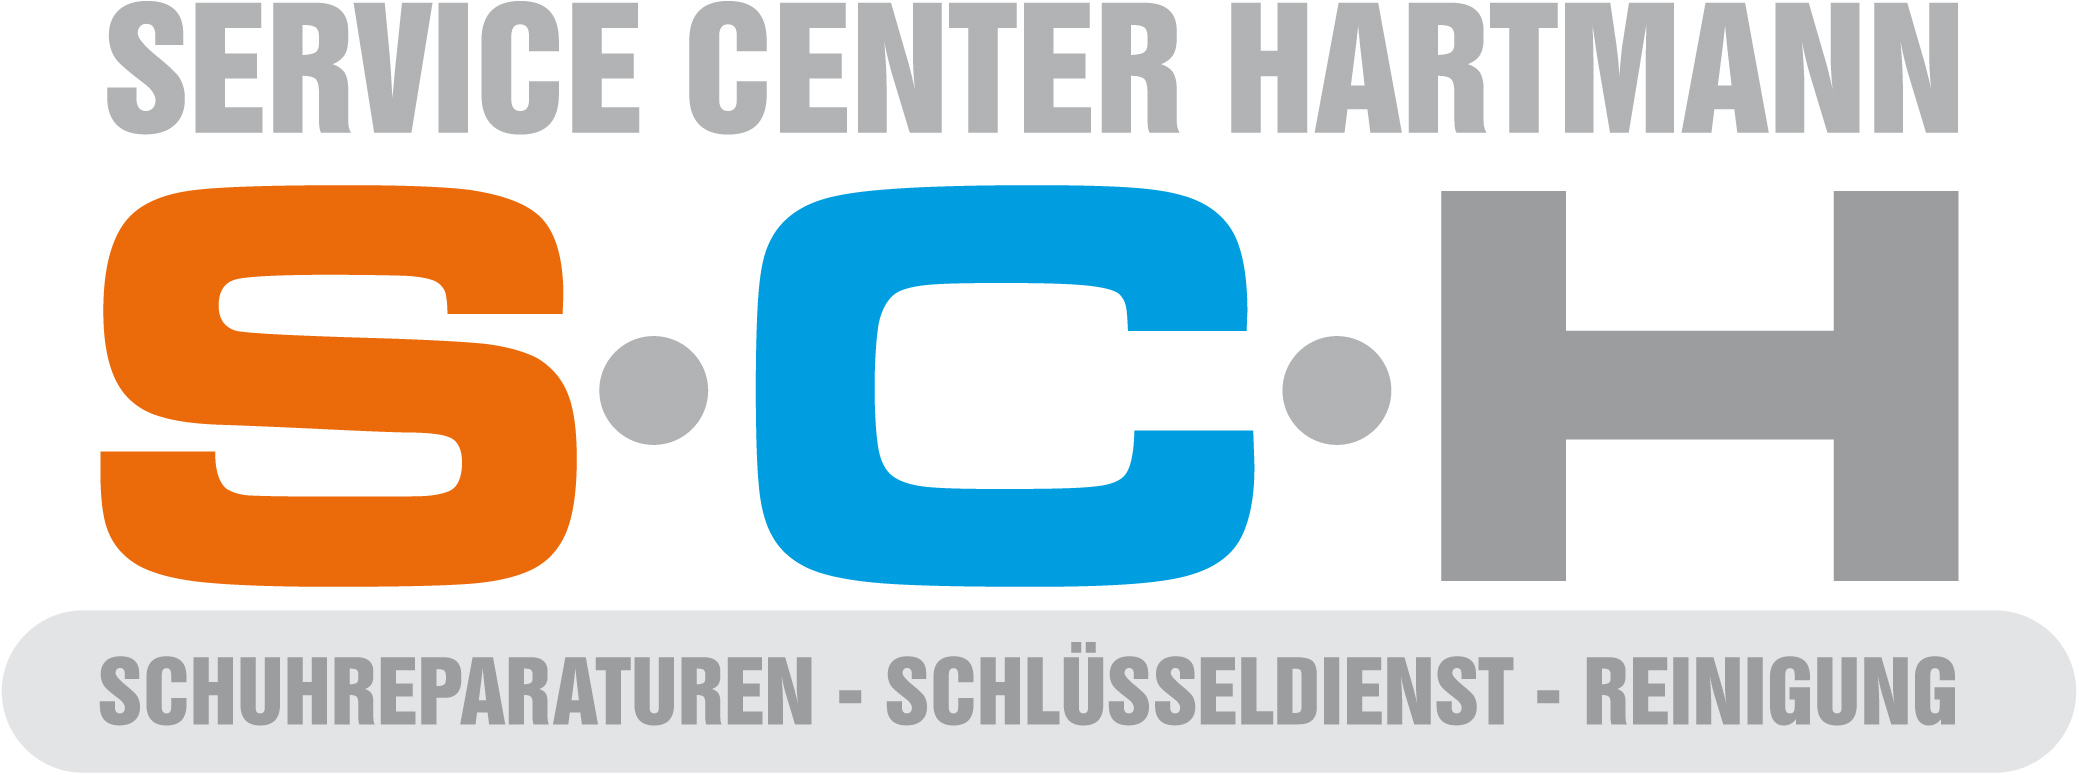 Bild 1 Servicecenter-Hartmann in Leipzig